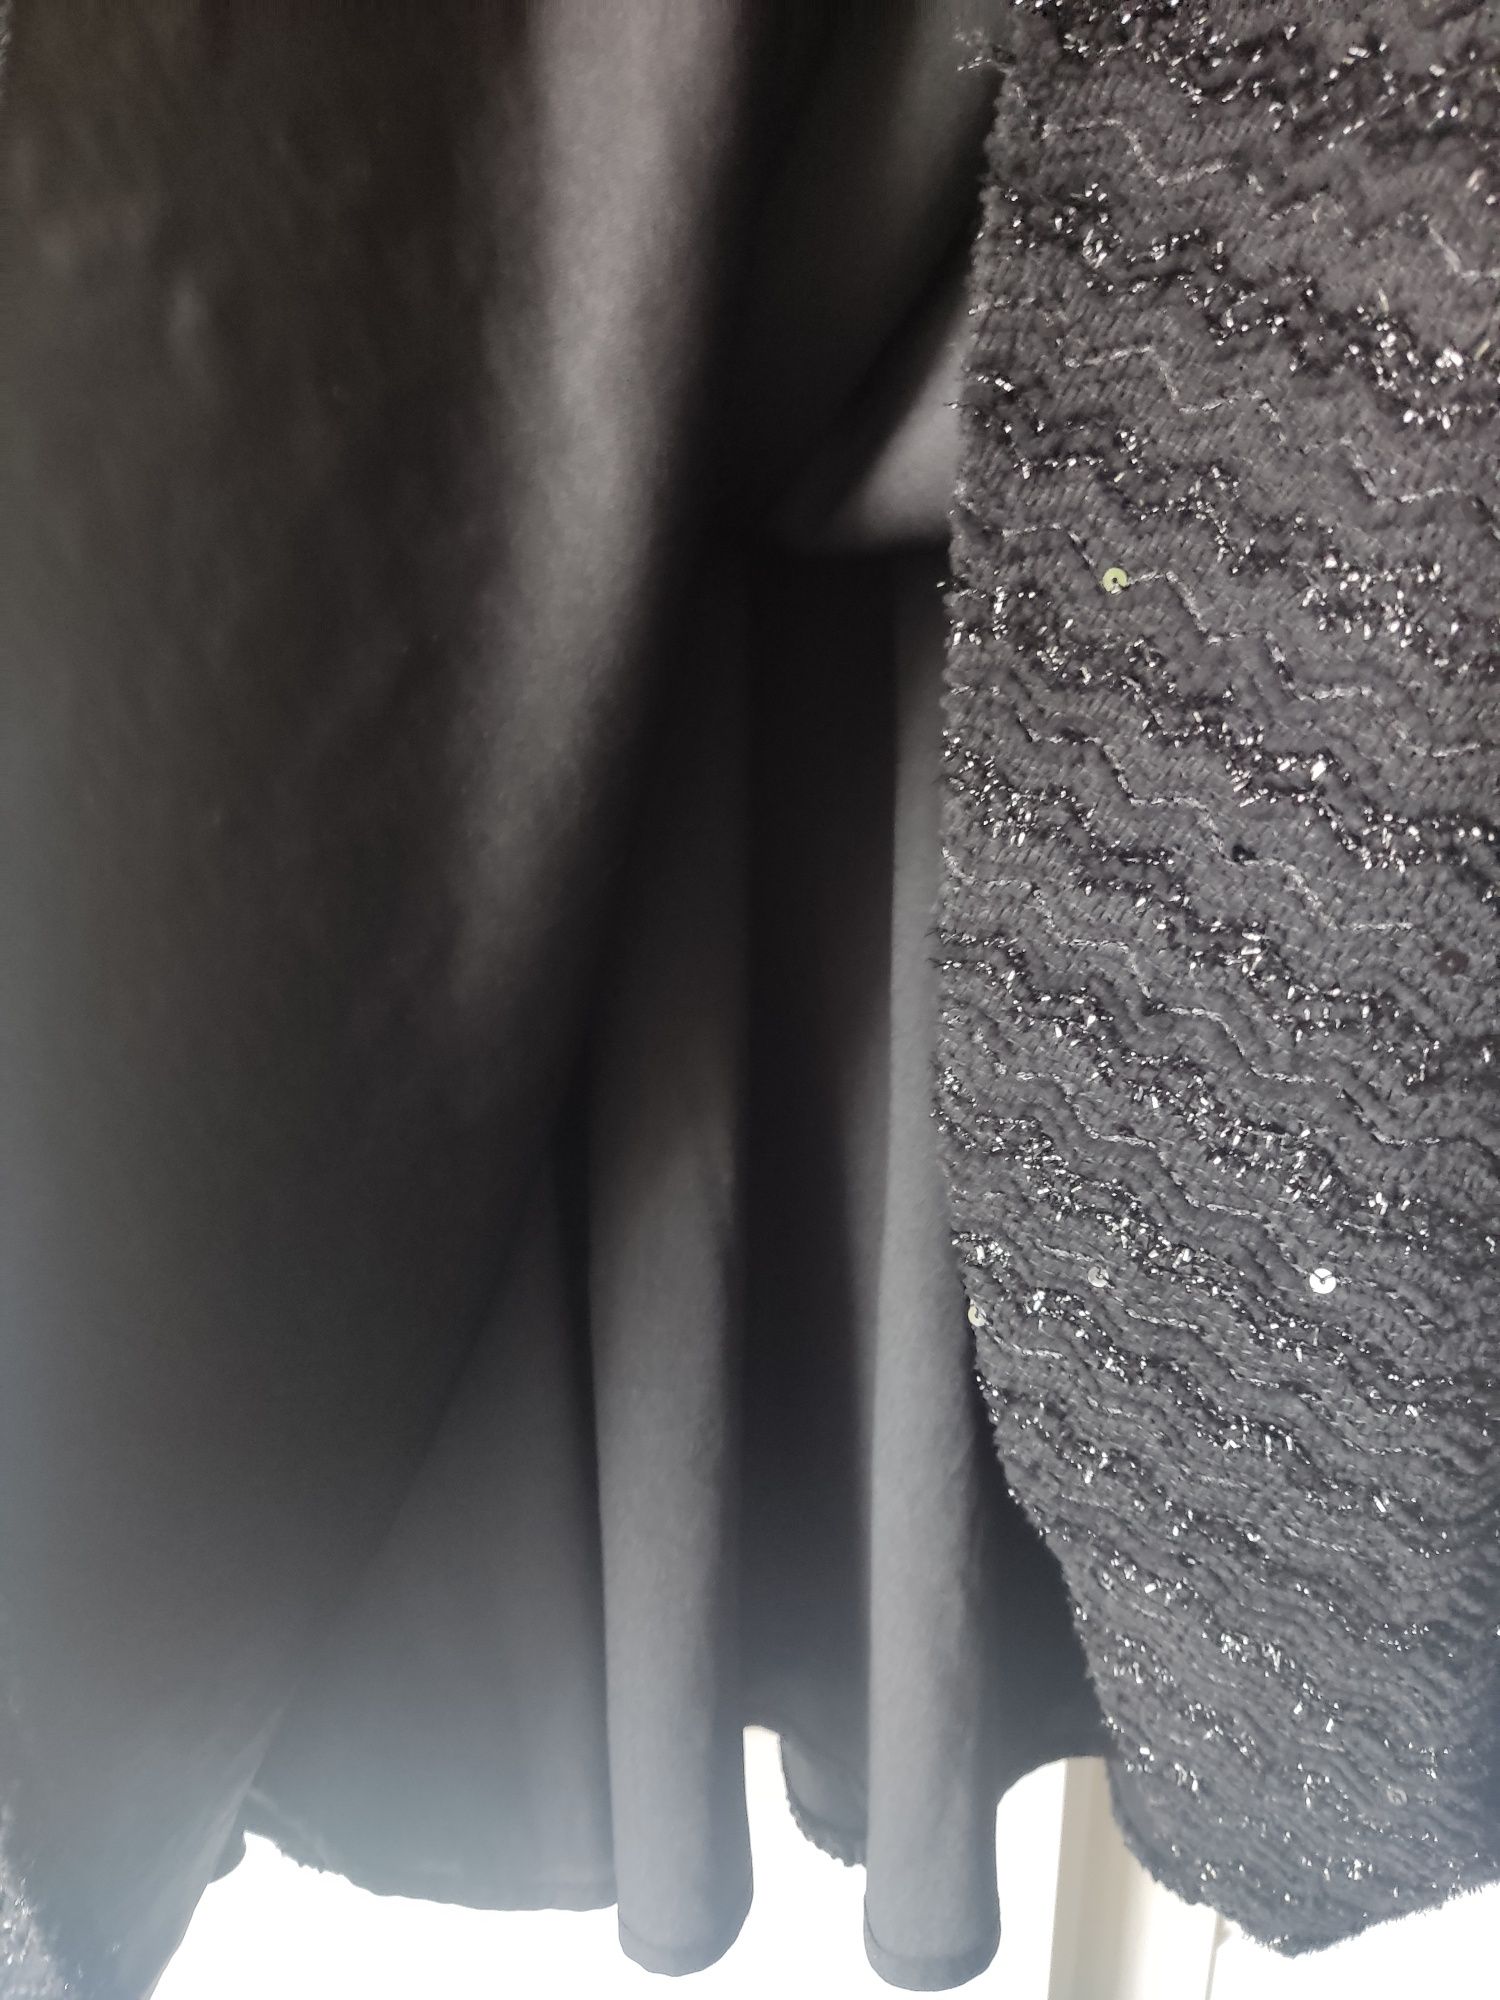 Sukienka z cekinami czarna kieszenie 42 Xl andrzejki sylwester